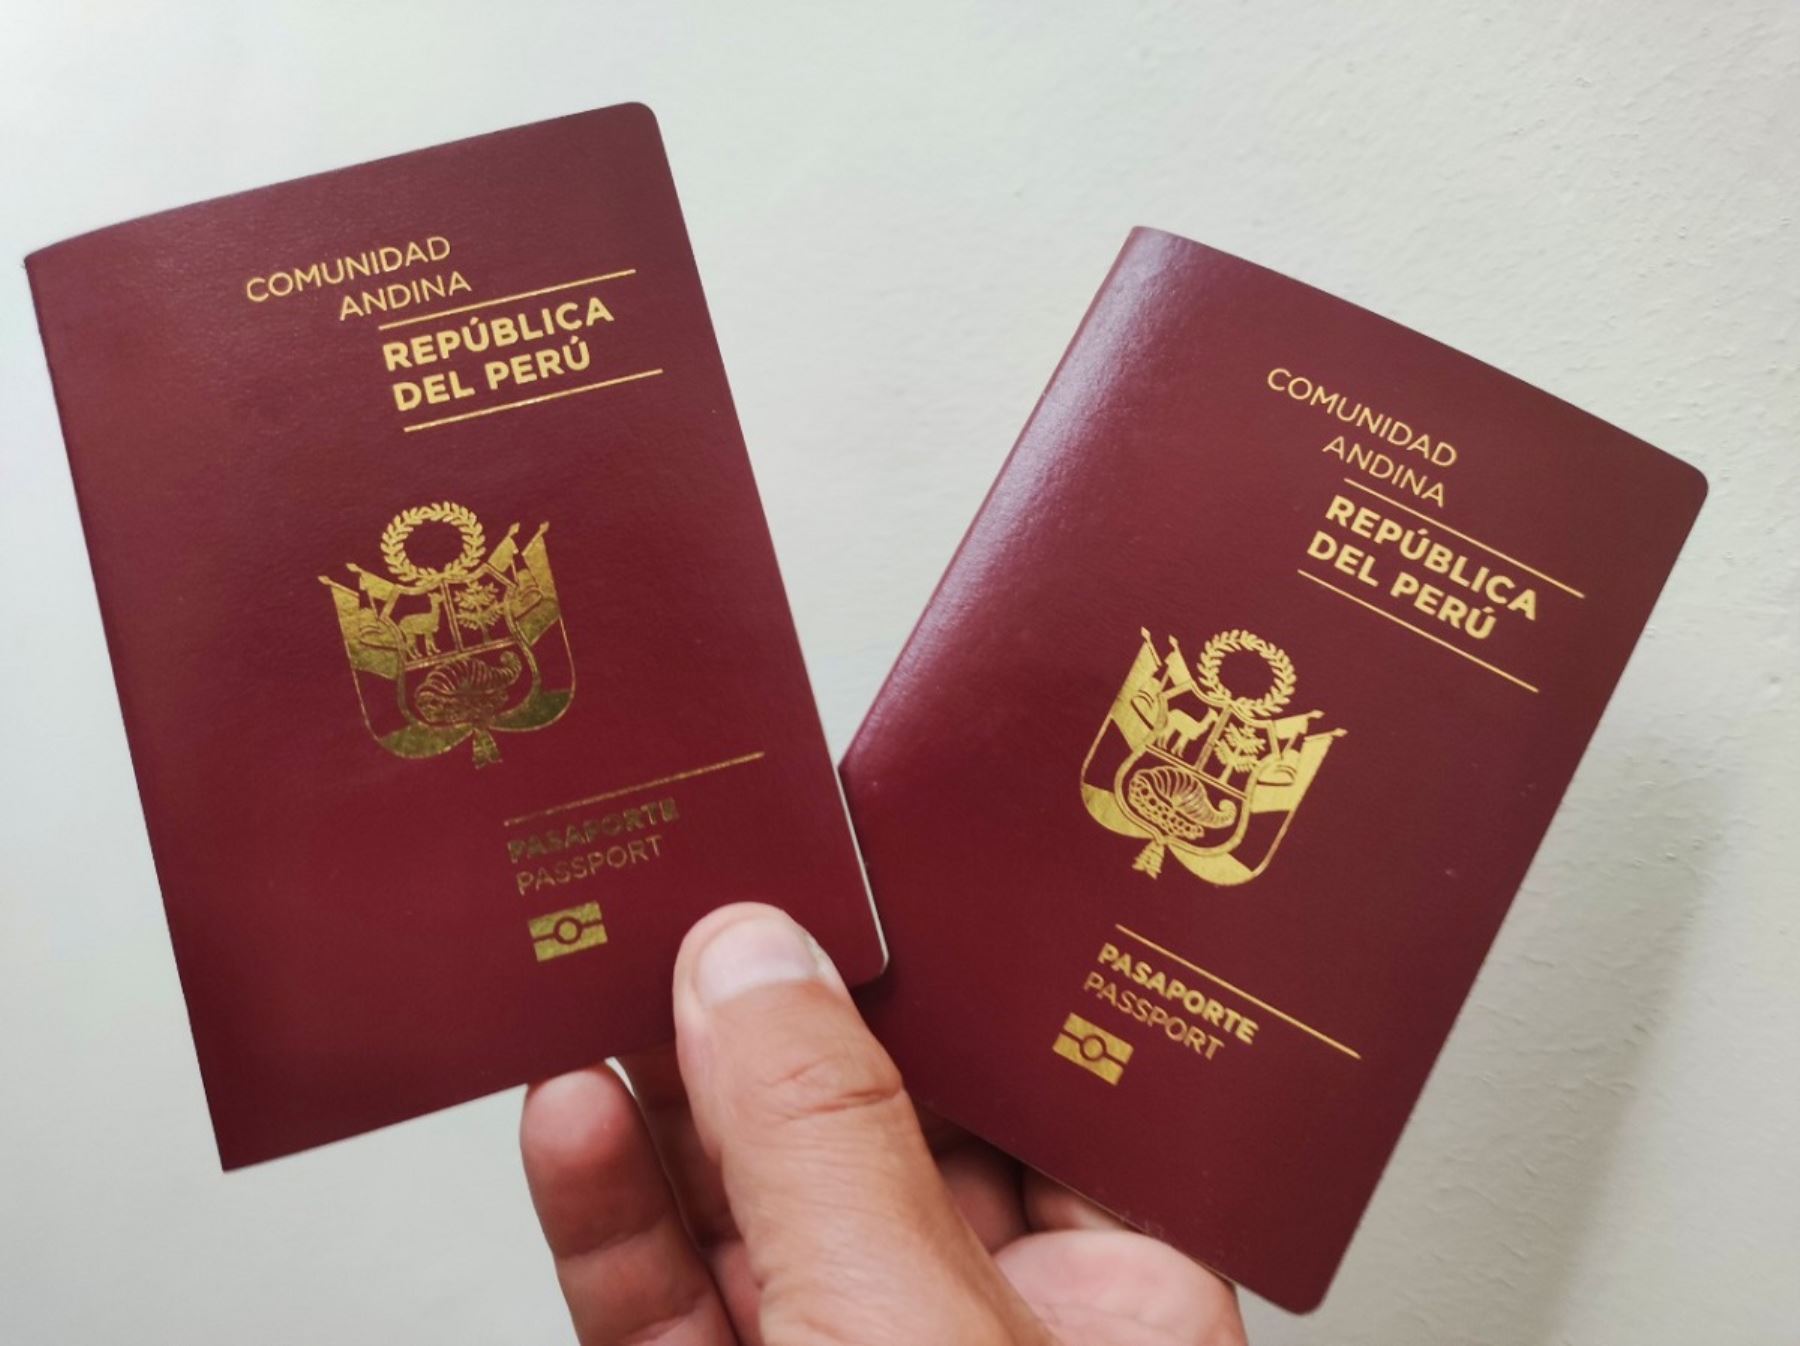 Hoy 16 de mayo se inicia marcha blanca para trámites de pasaporte. Aquí la programación